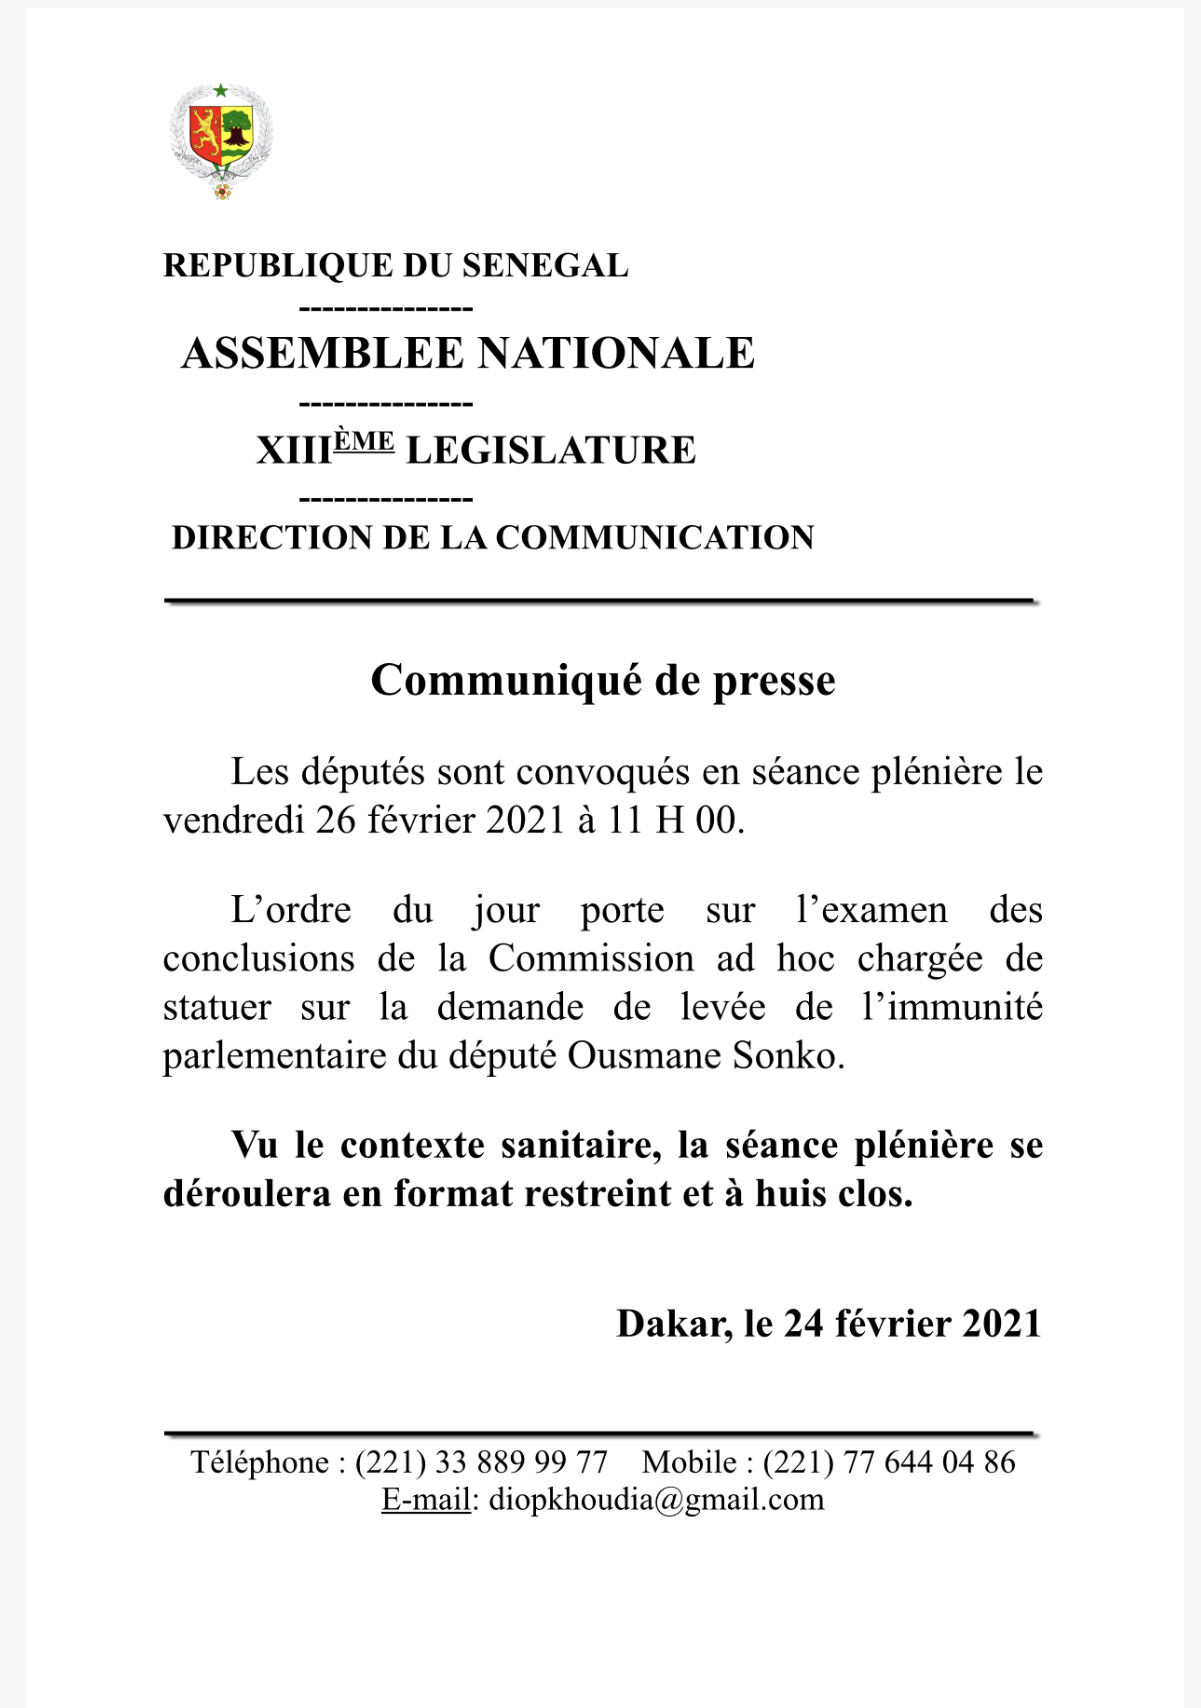 Levée de l’immunité parlementaire du député Ousmane Sonko : Les députés statuent ce vendredi.